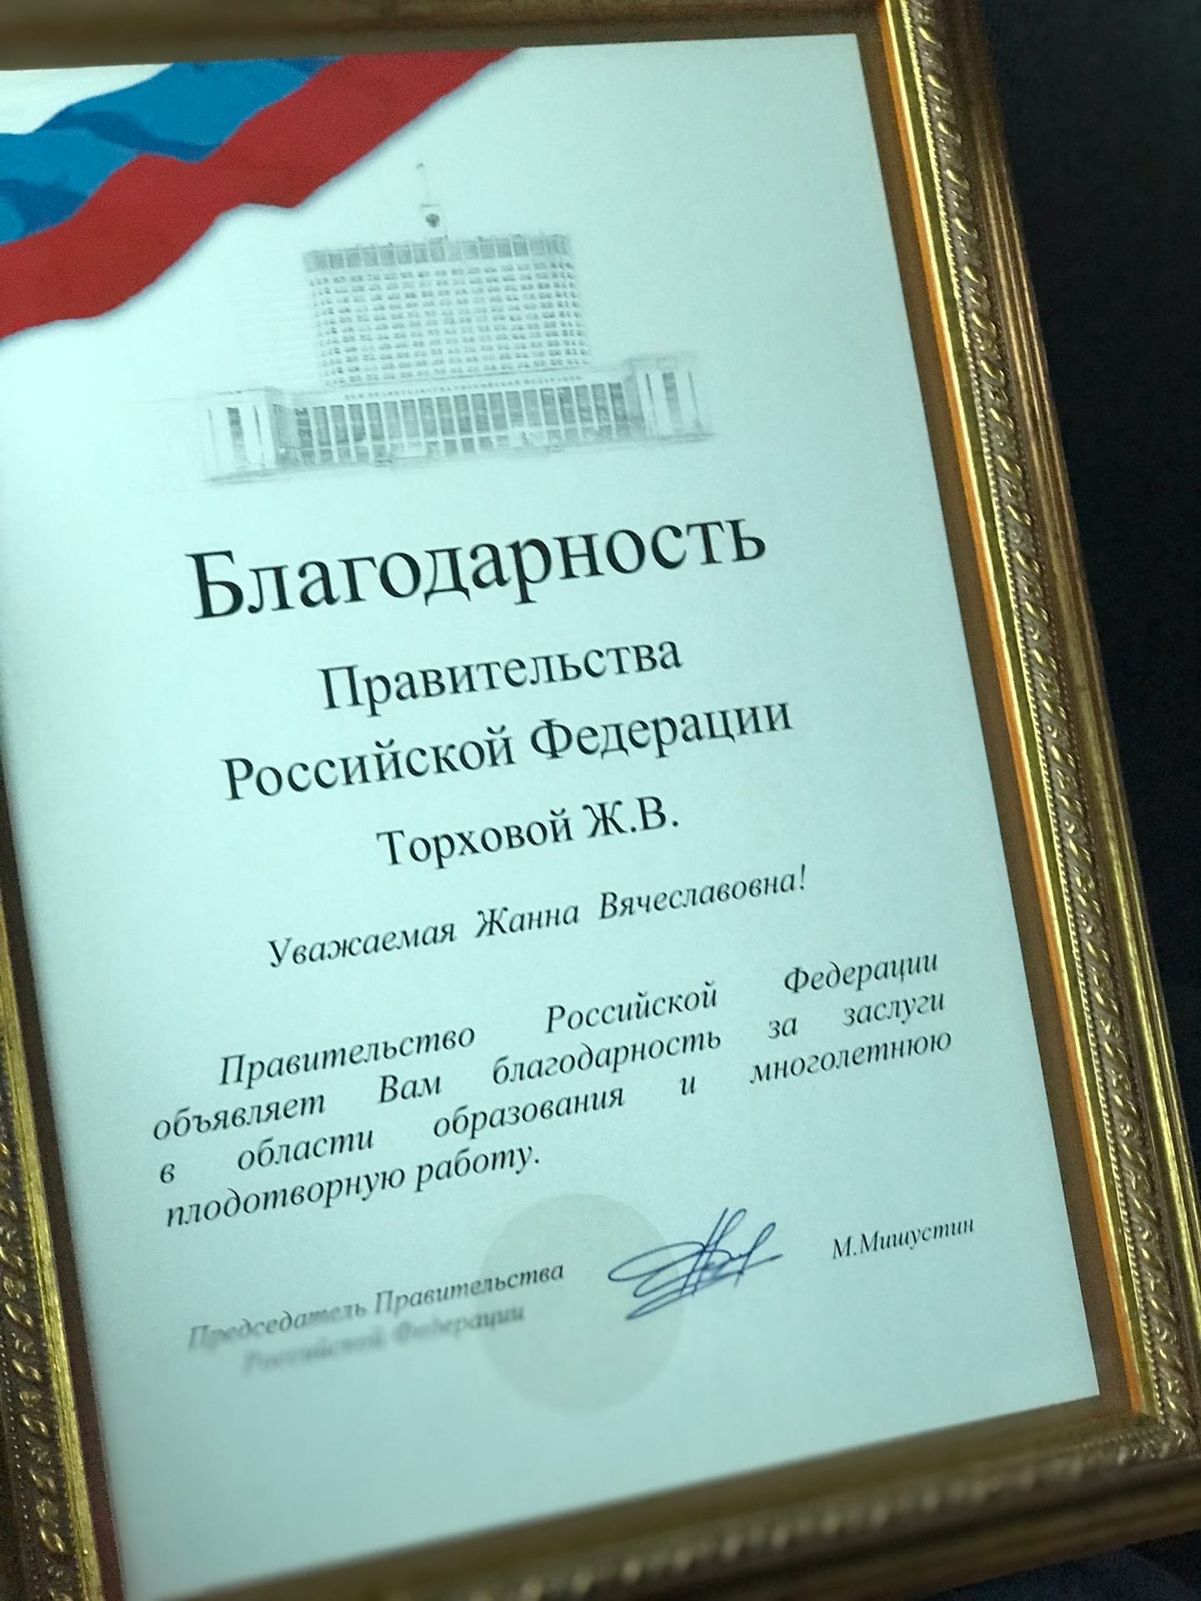 Учитель истории из Ярославля получила премию Правительства России в области образования